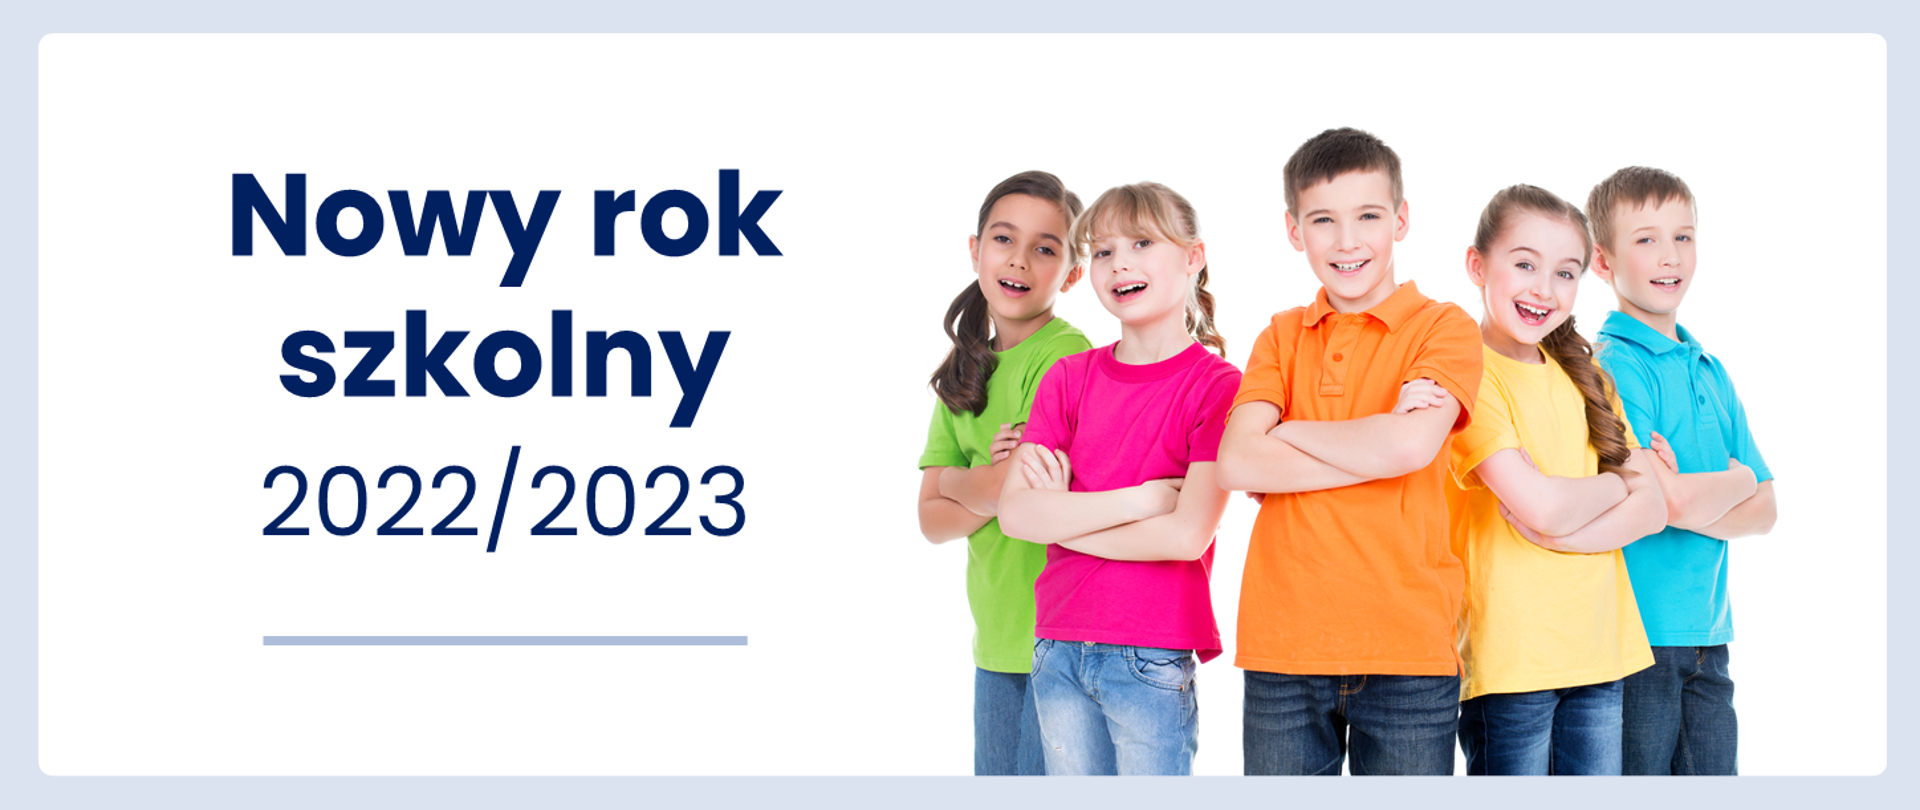 Uśmiechnięte dzieci w kolorowych bluzkach obok napis - Nowy rok szkolny 2022/2023